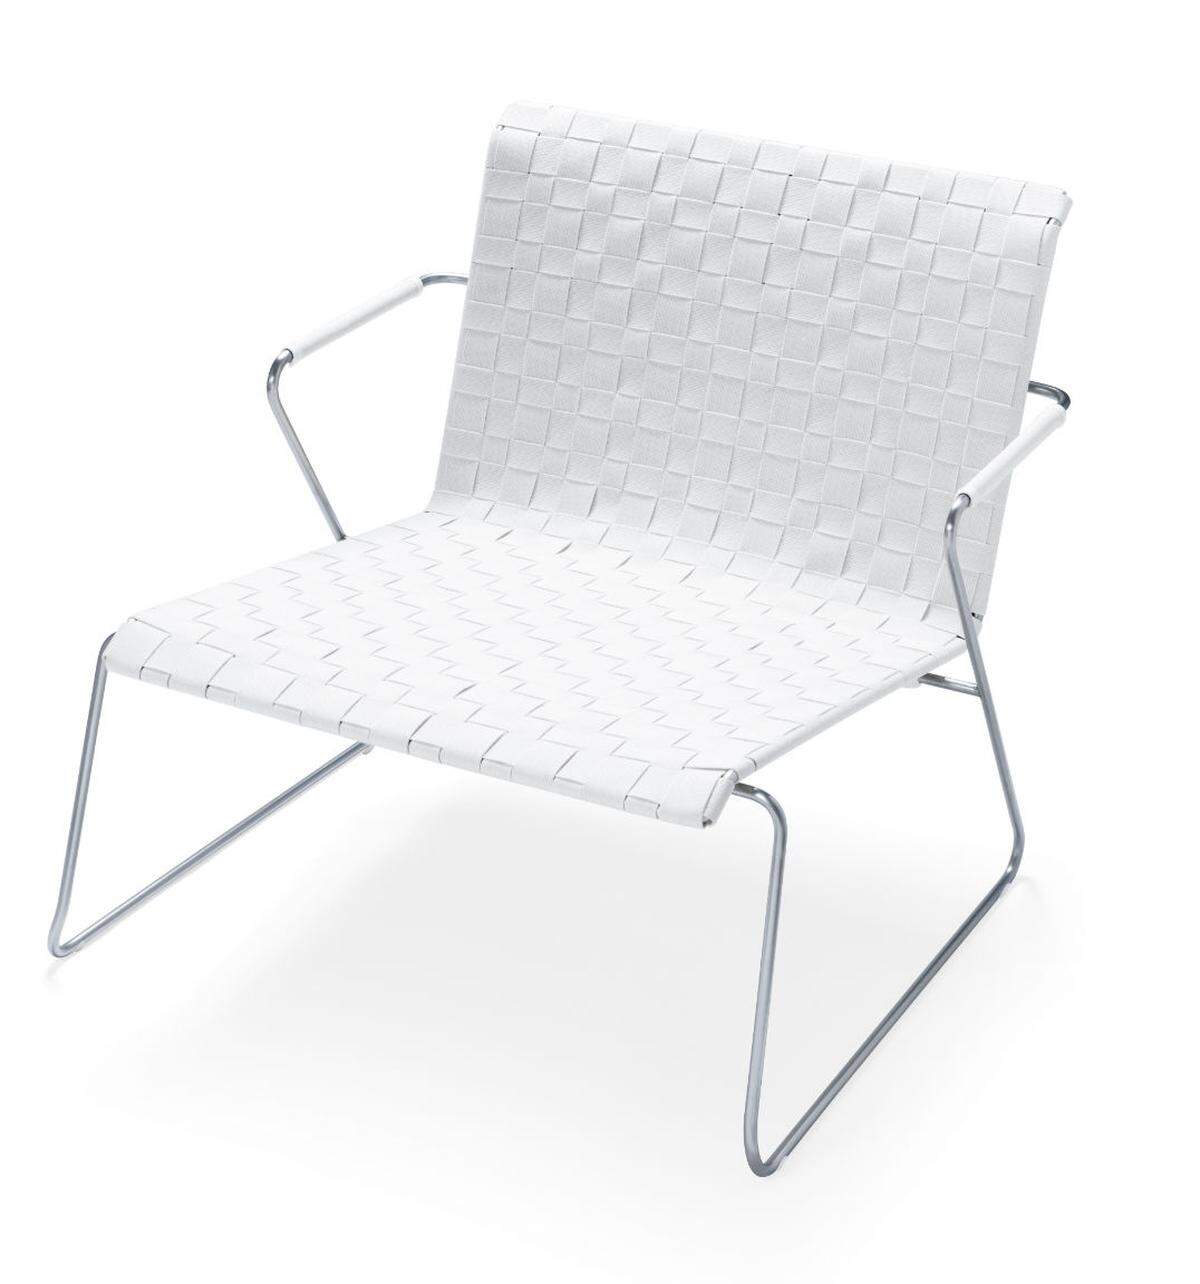 Der Lounge Sessel Slim Belt ist stapelbar, witterungsbeständig und komfortabel.Hersteller: VITEO GmbH, ÖsterreichIn-house design: Wolfgang Pichler, Österreich